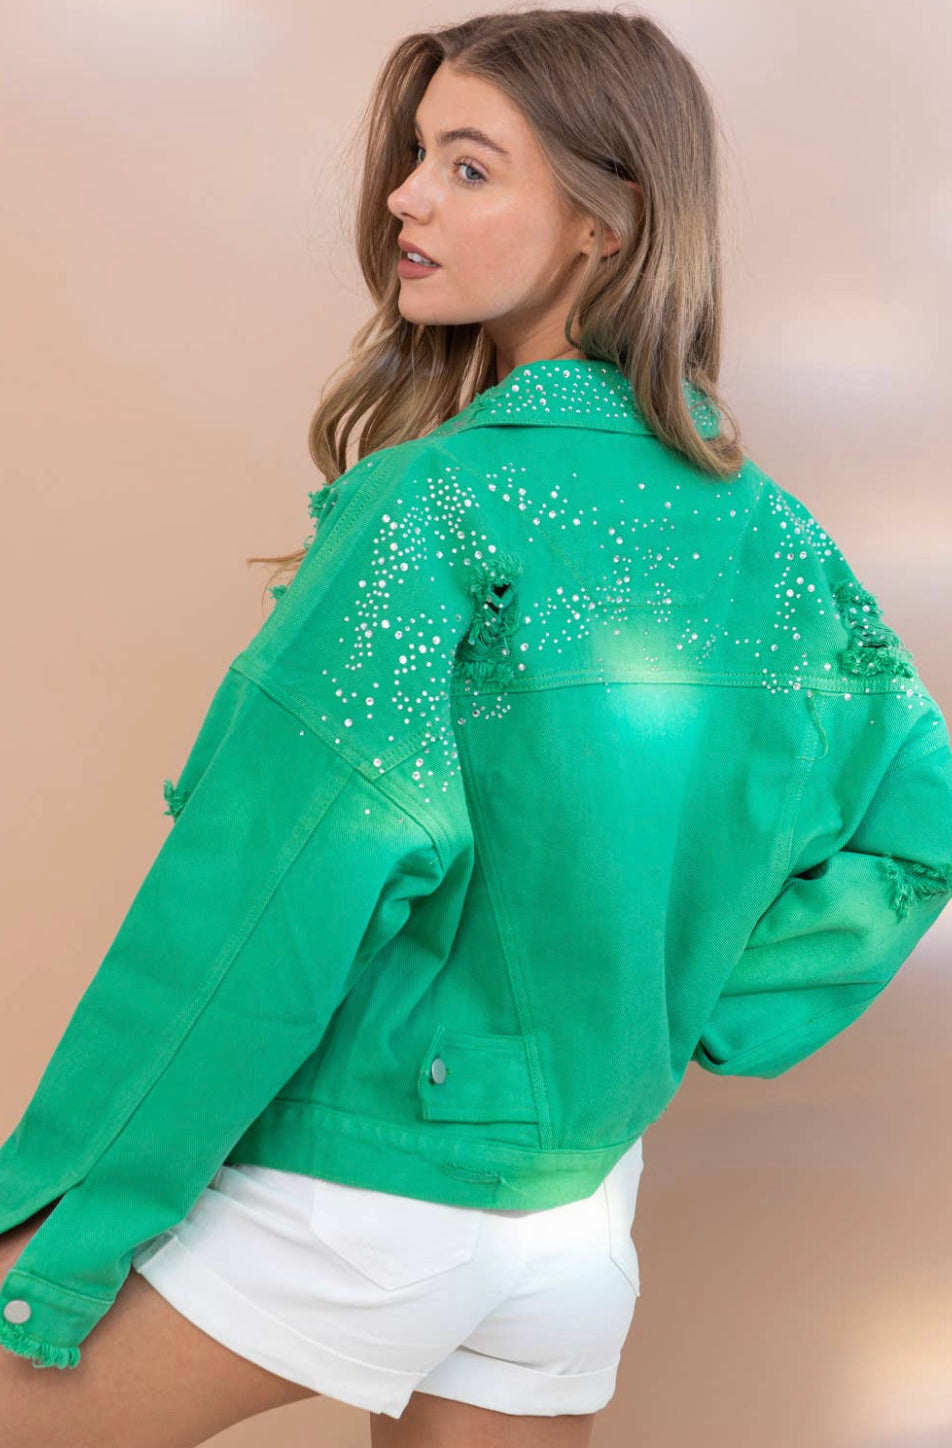 Sparkling Studded Distressed Denim Jacket (multiple colors)